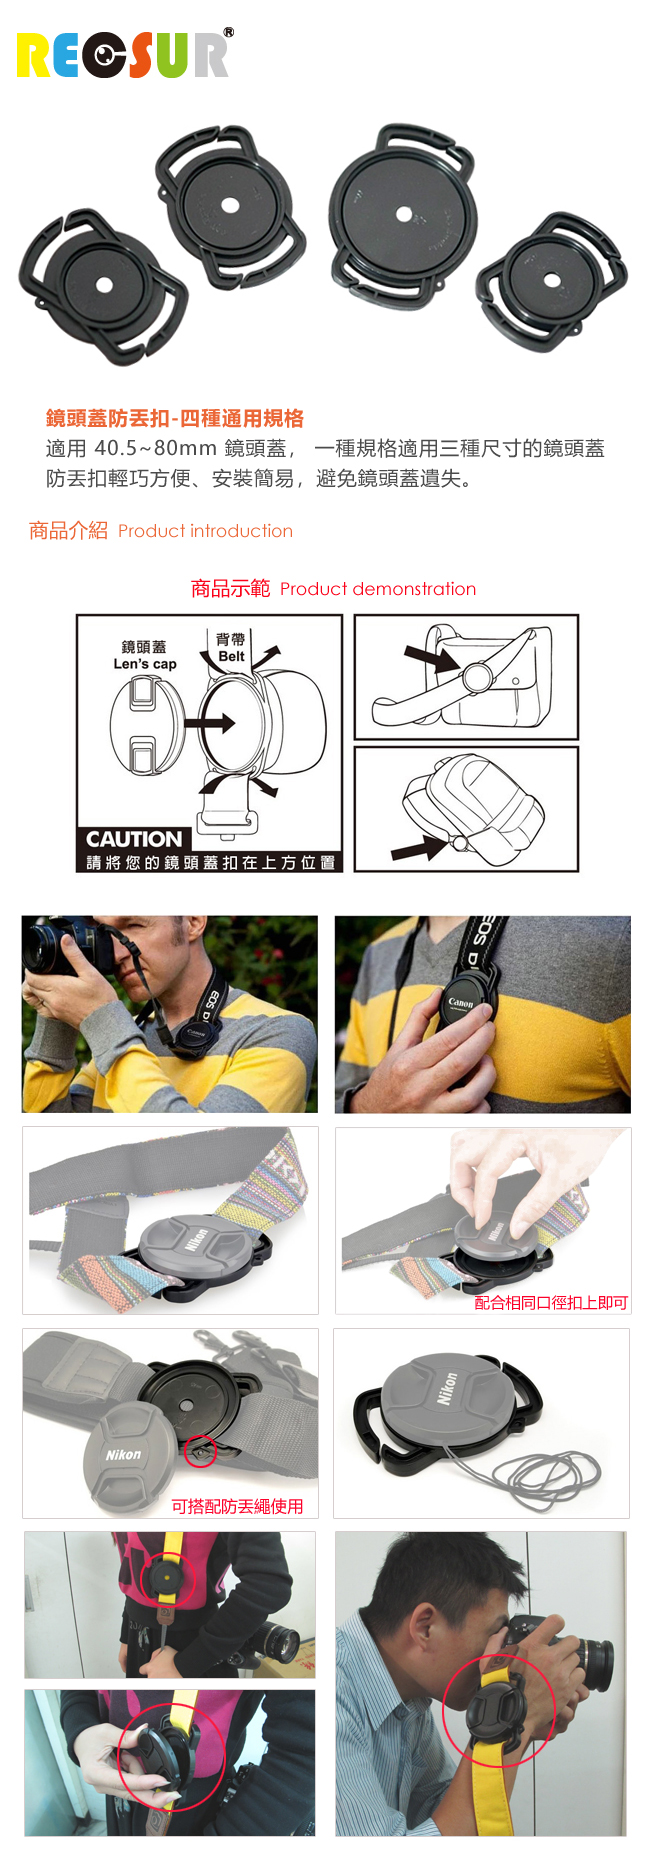 RECSUR 銳攝 鏡頭蓋防丟扣-可安裝於背帶上面